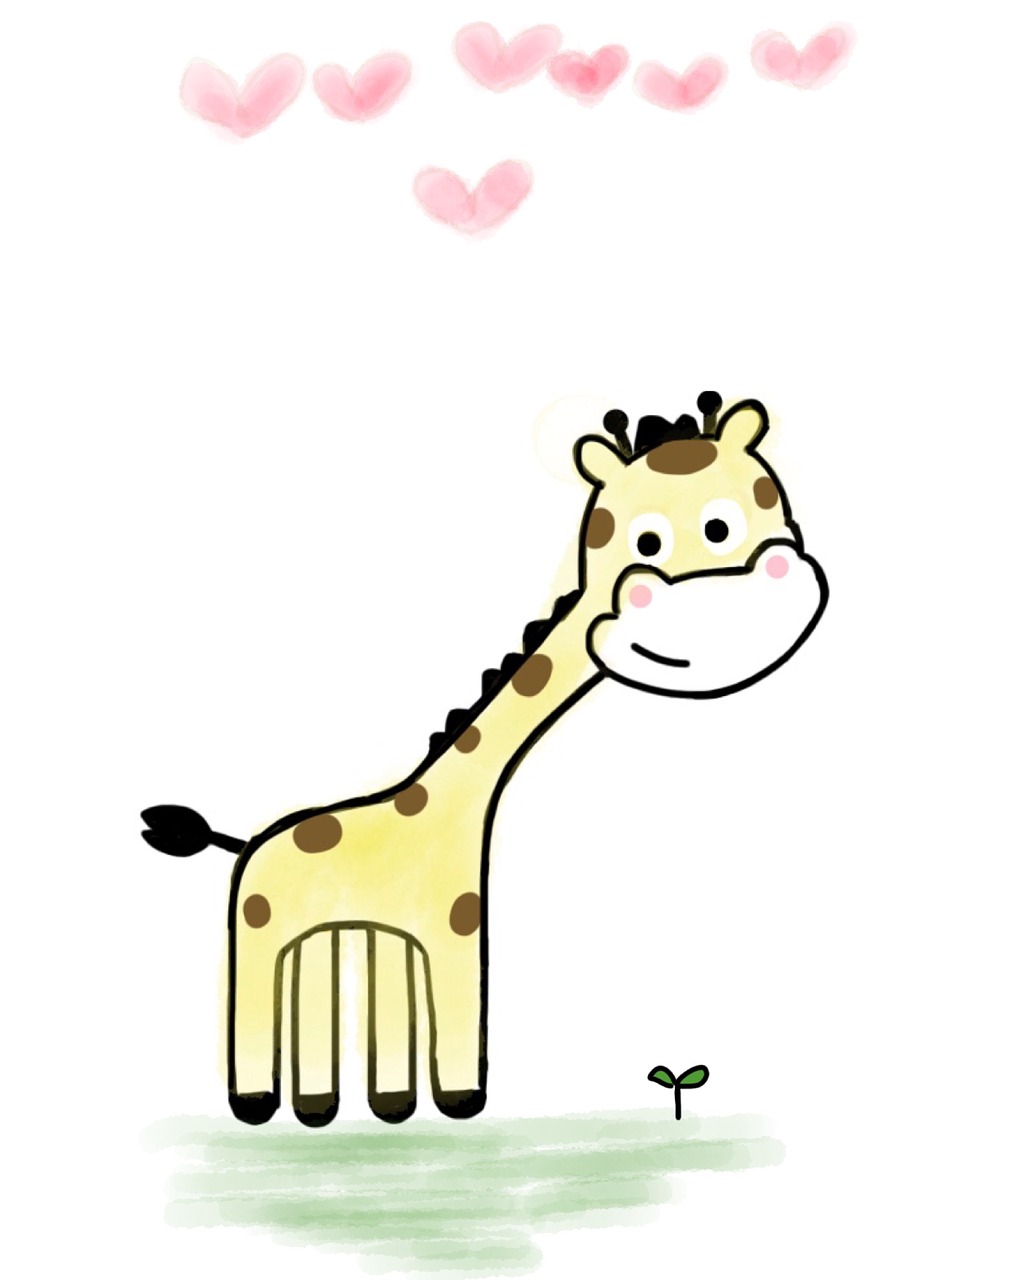 giraffe cute giraffe heart free photo